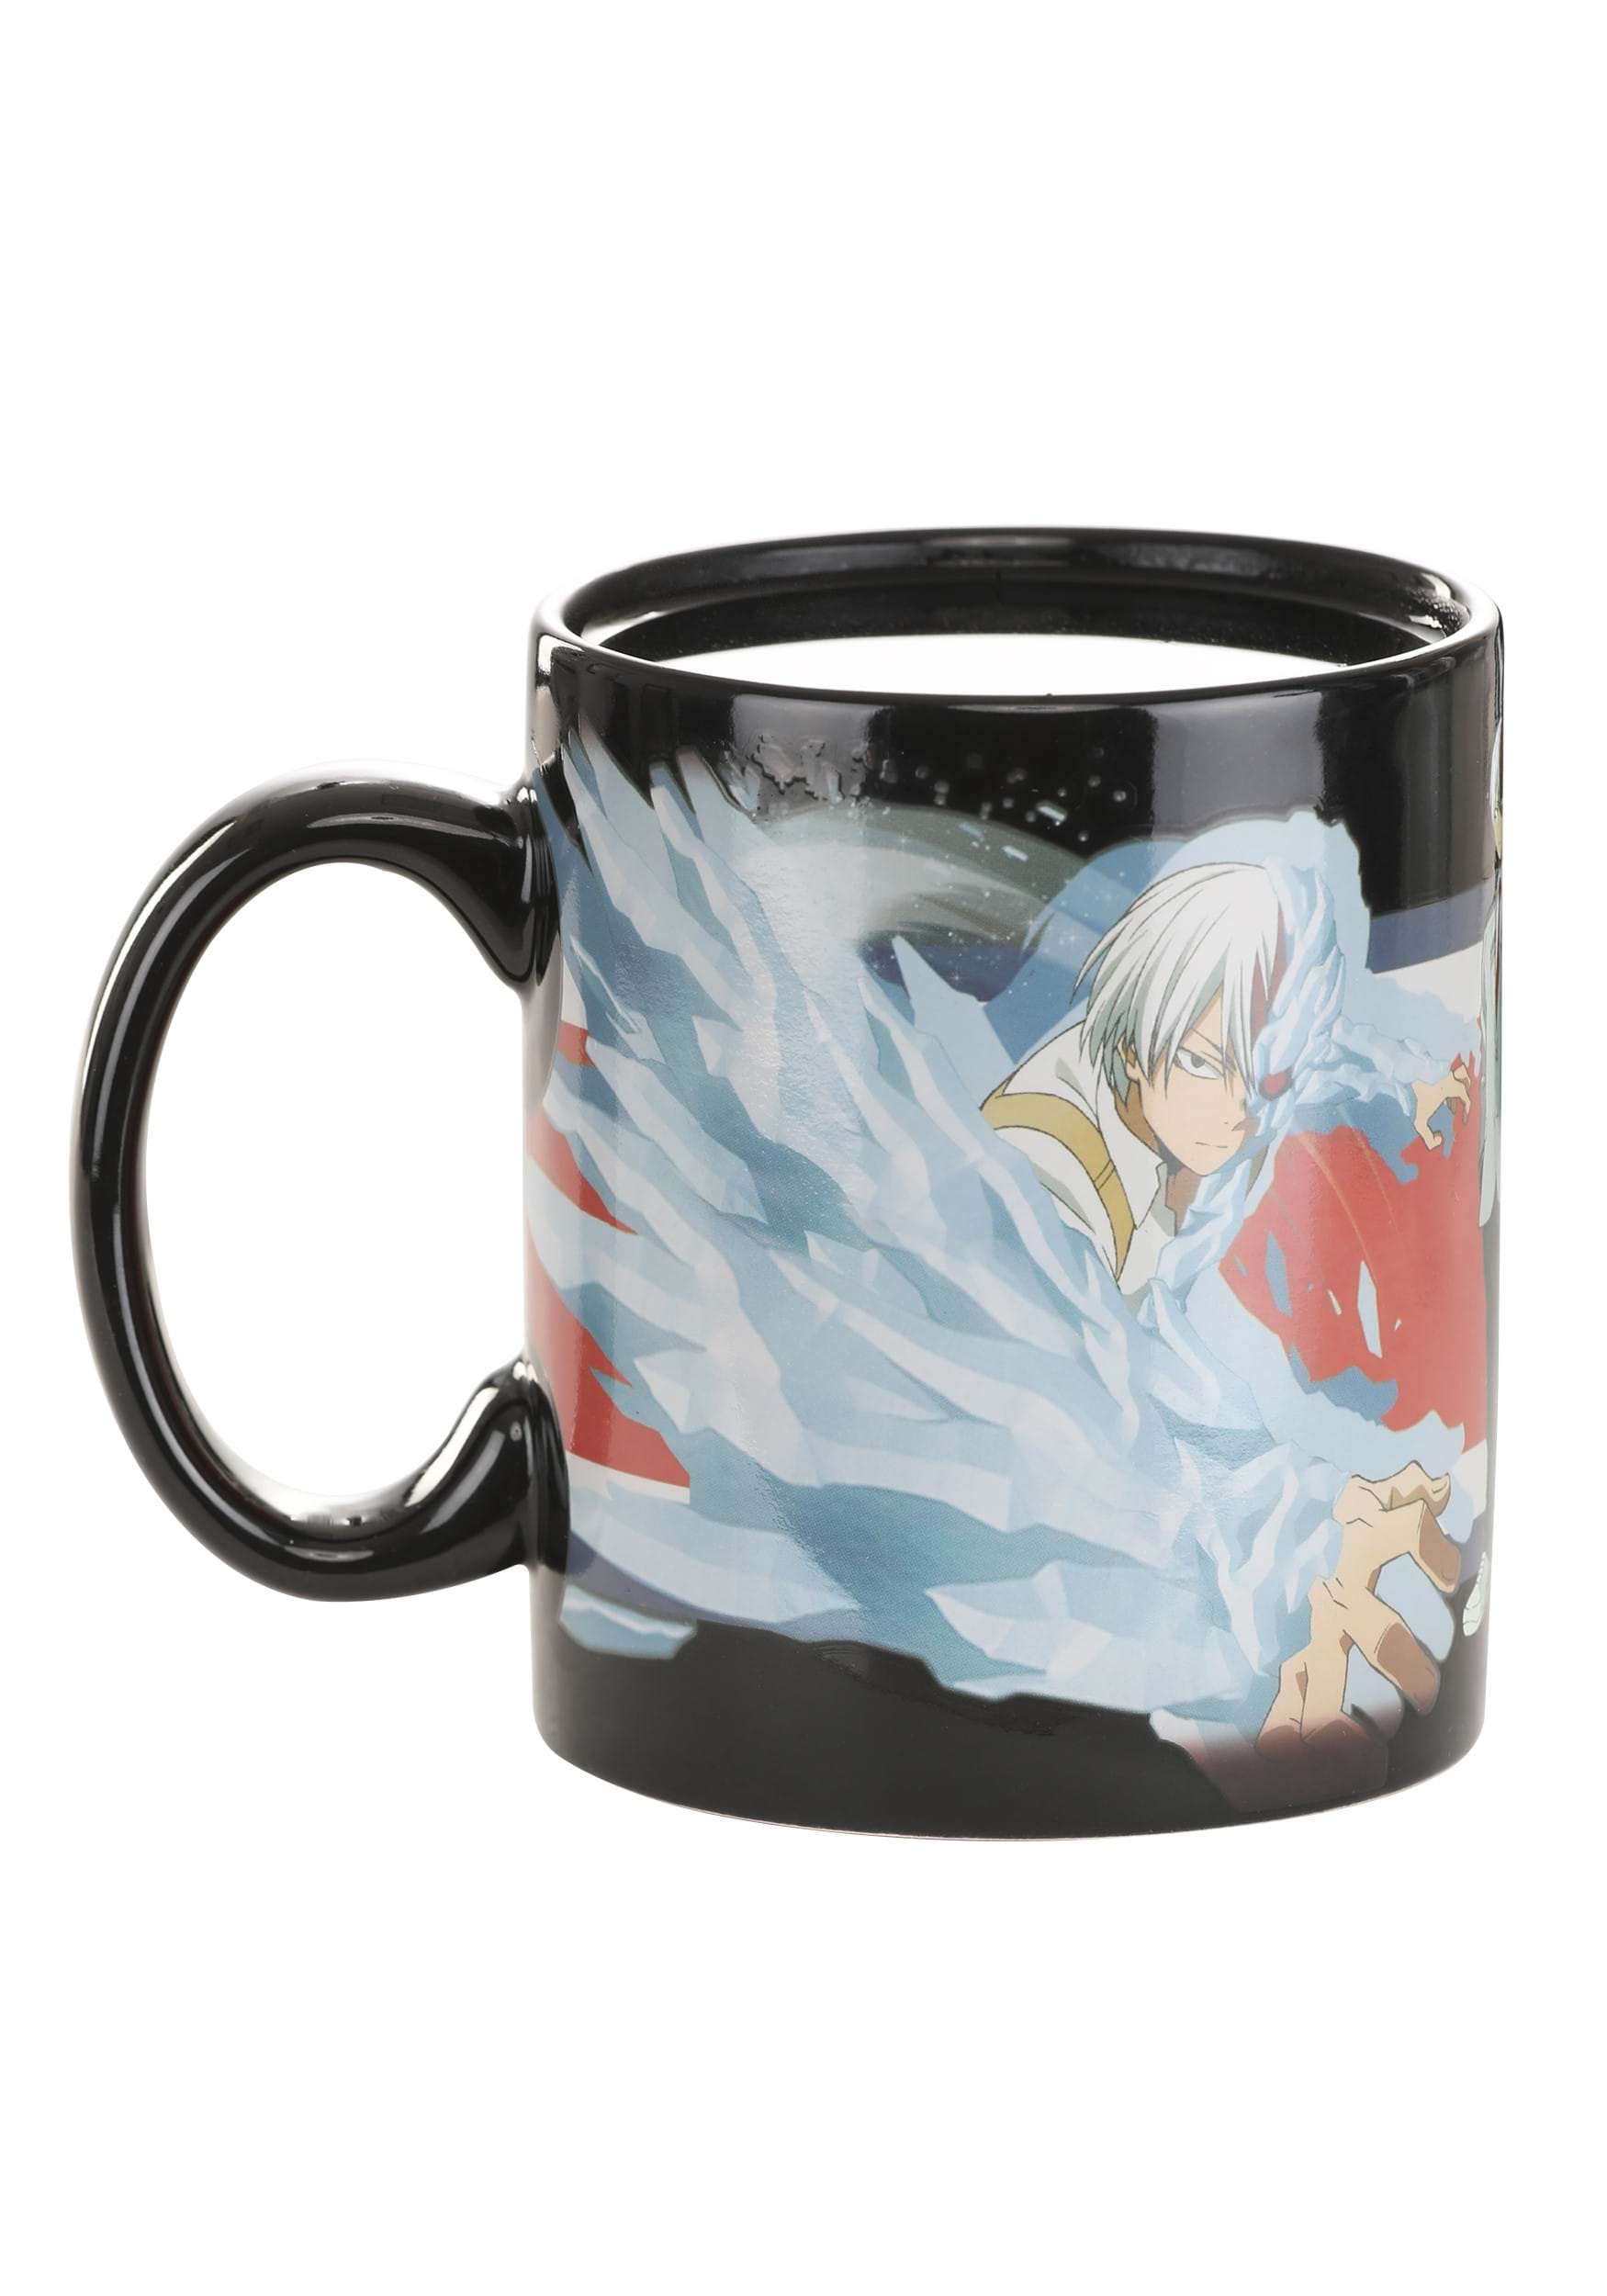 16 oz My Hero Academia Heat Change Coffee Mug | Anime Mugs